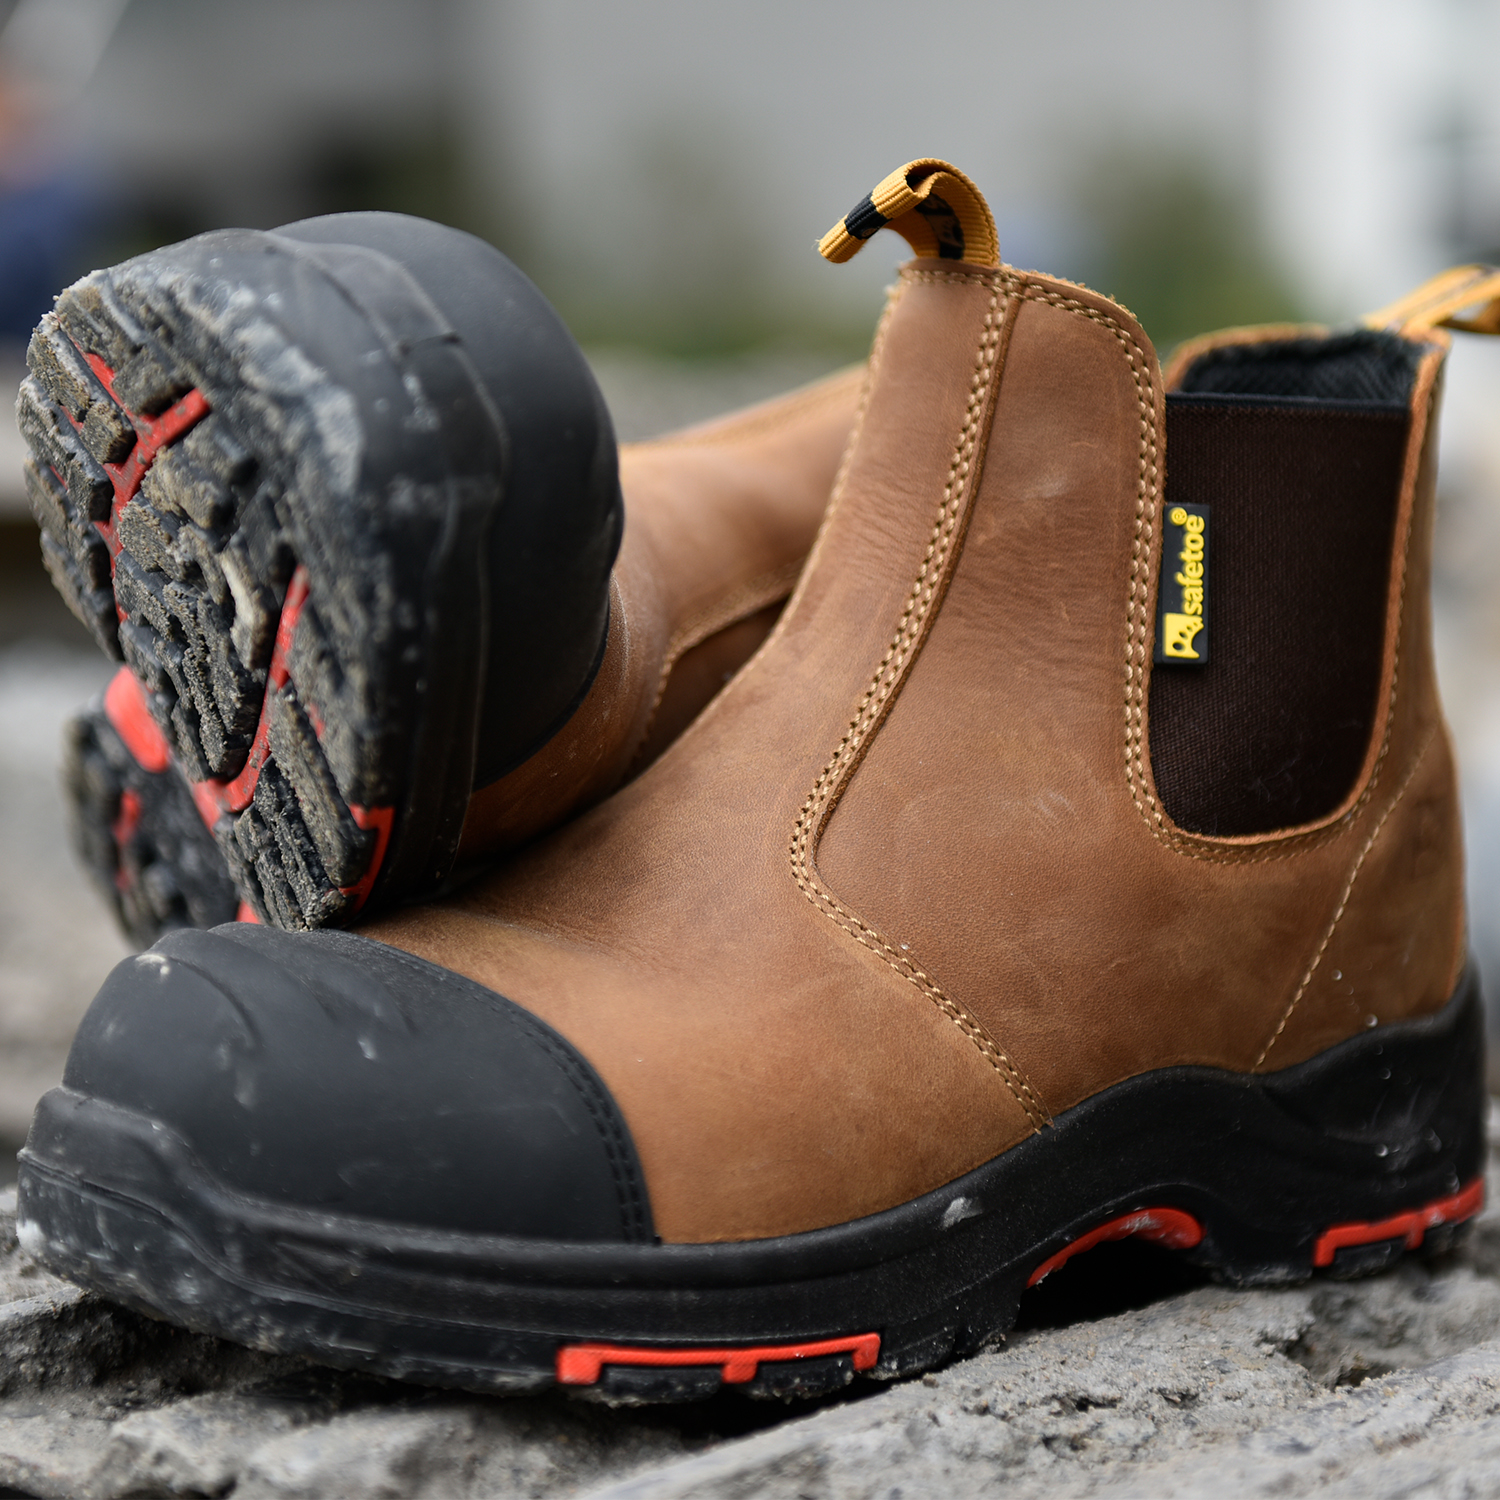 Zapatos de seguridad ESD antiestáticos antideslizantes resistentes al petróleo y al gas, puntera compuesta M-8025NB